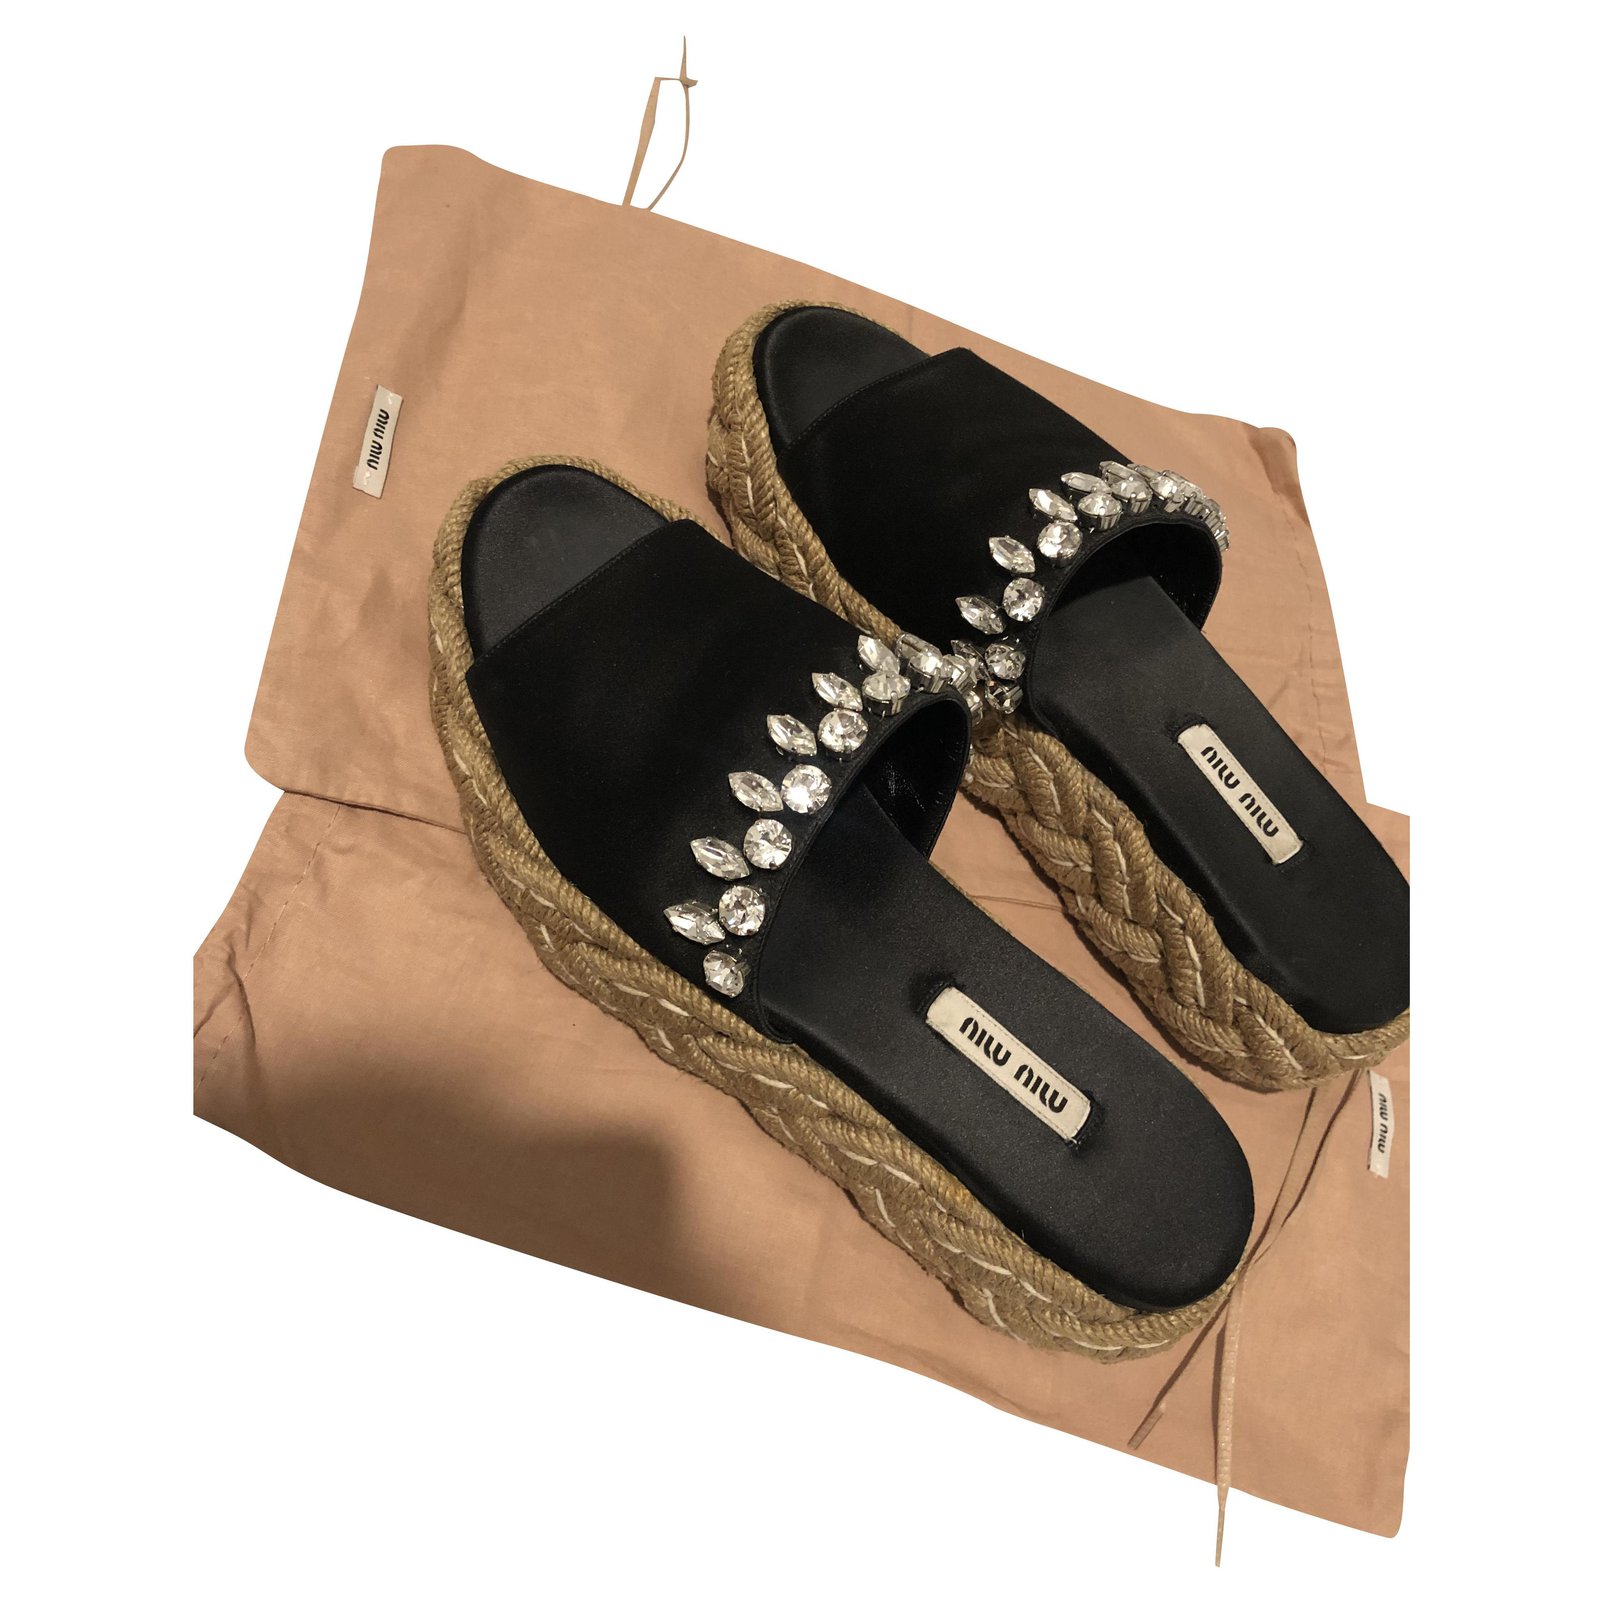 Mujer Zapatos de Zapatos planos Sandalias con plataforma plana Miu Miu de Cuero de color Negro sandalias y chanclas de Sandalias planas 